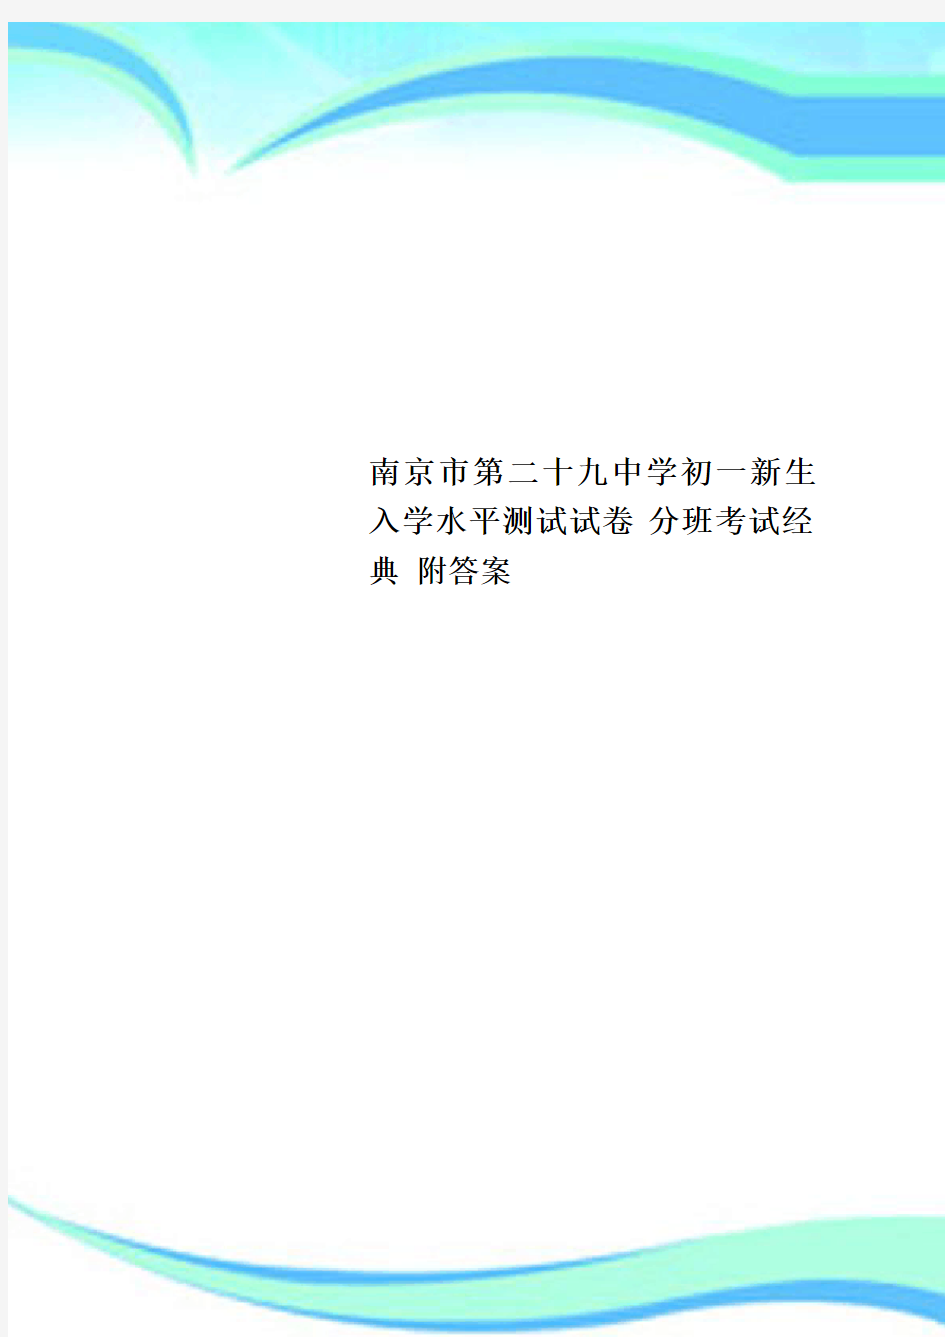 南京市第二十九中学初一新生入学水平测试试卷 分班考试经典 附标准答案